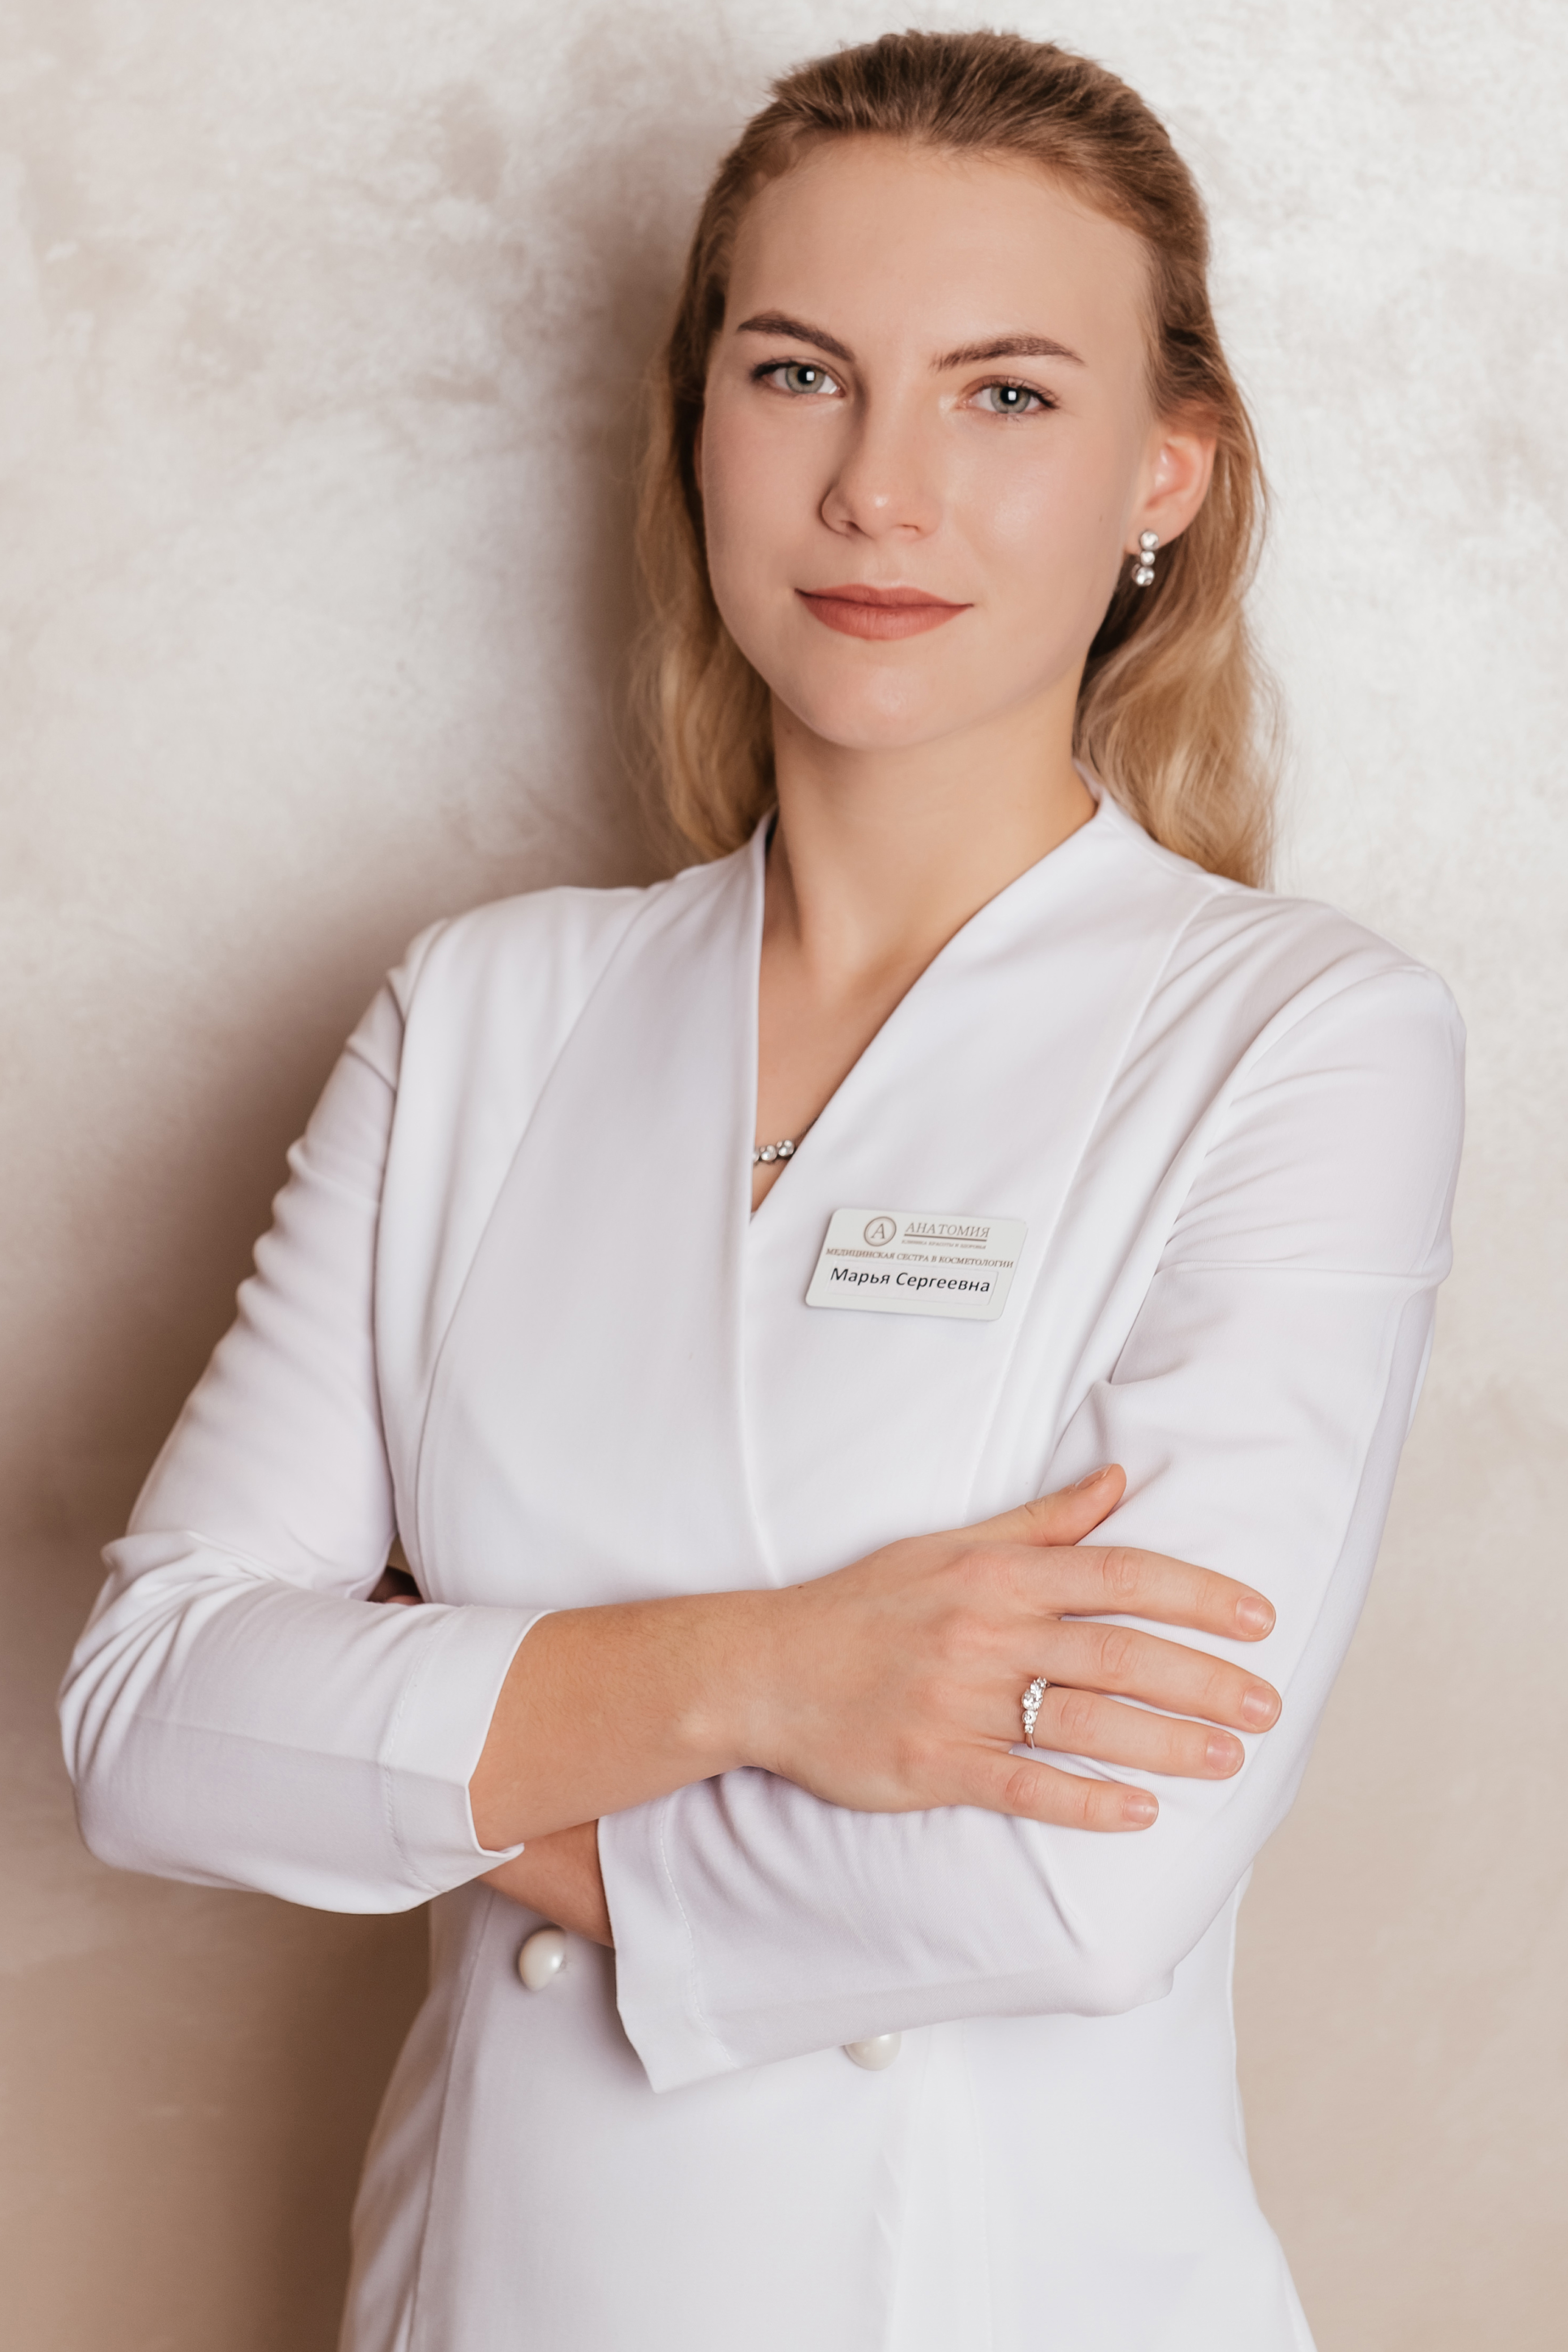 Специалист по лазерной эпиляции клиники "Анатомия" на Бауманской, Кузьмина Марья Сергеевна